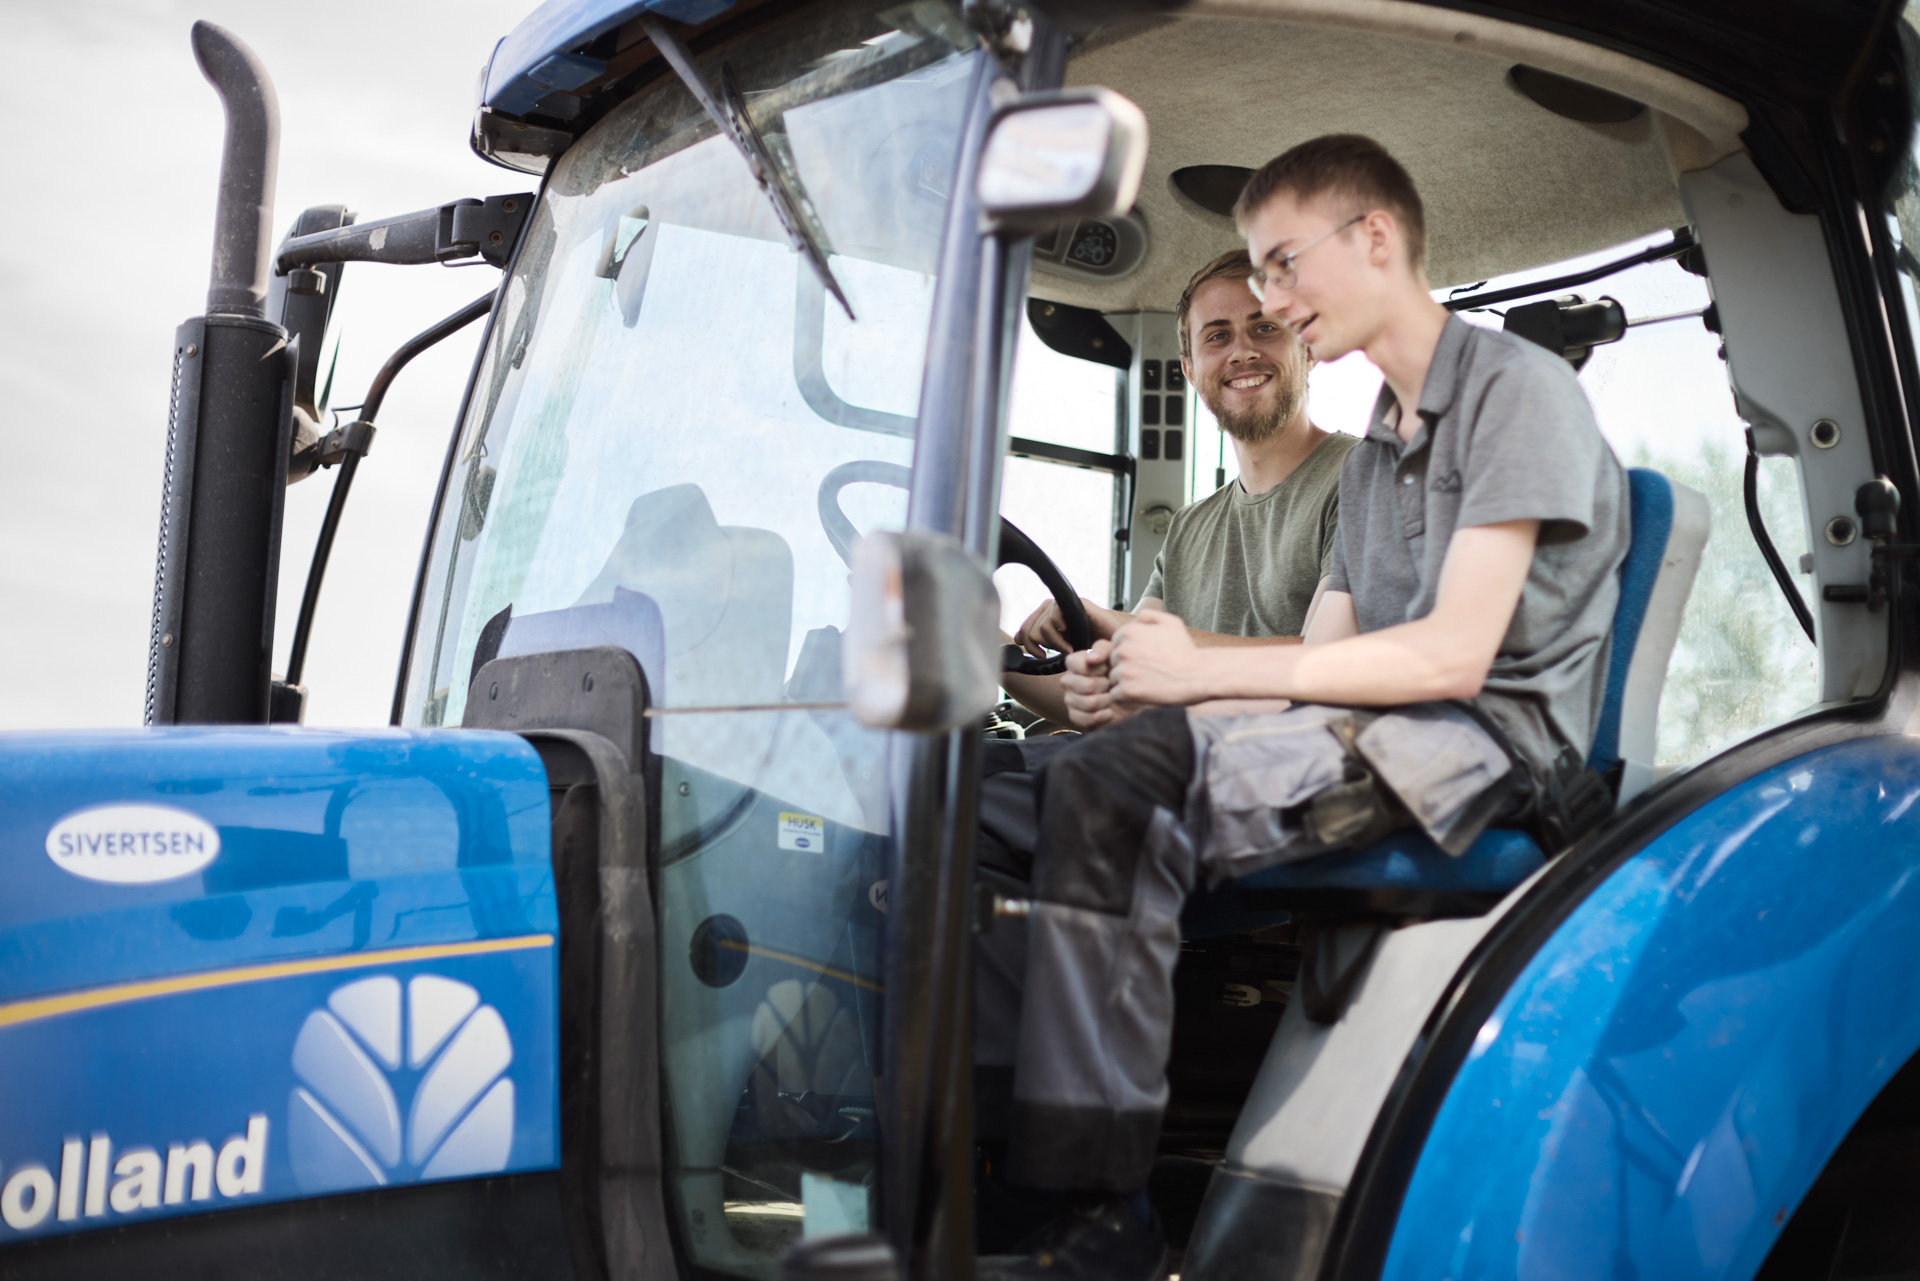 ZBC Slagelse den økologiske landbrugsskole Jernbjerggaard - landrbrugselever med speciale i maskiner sidder i traktor